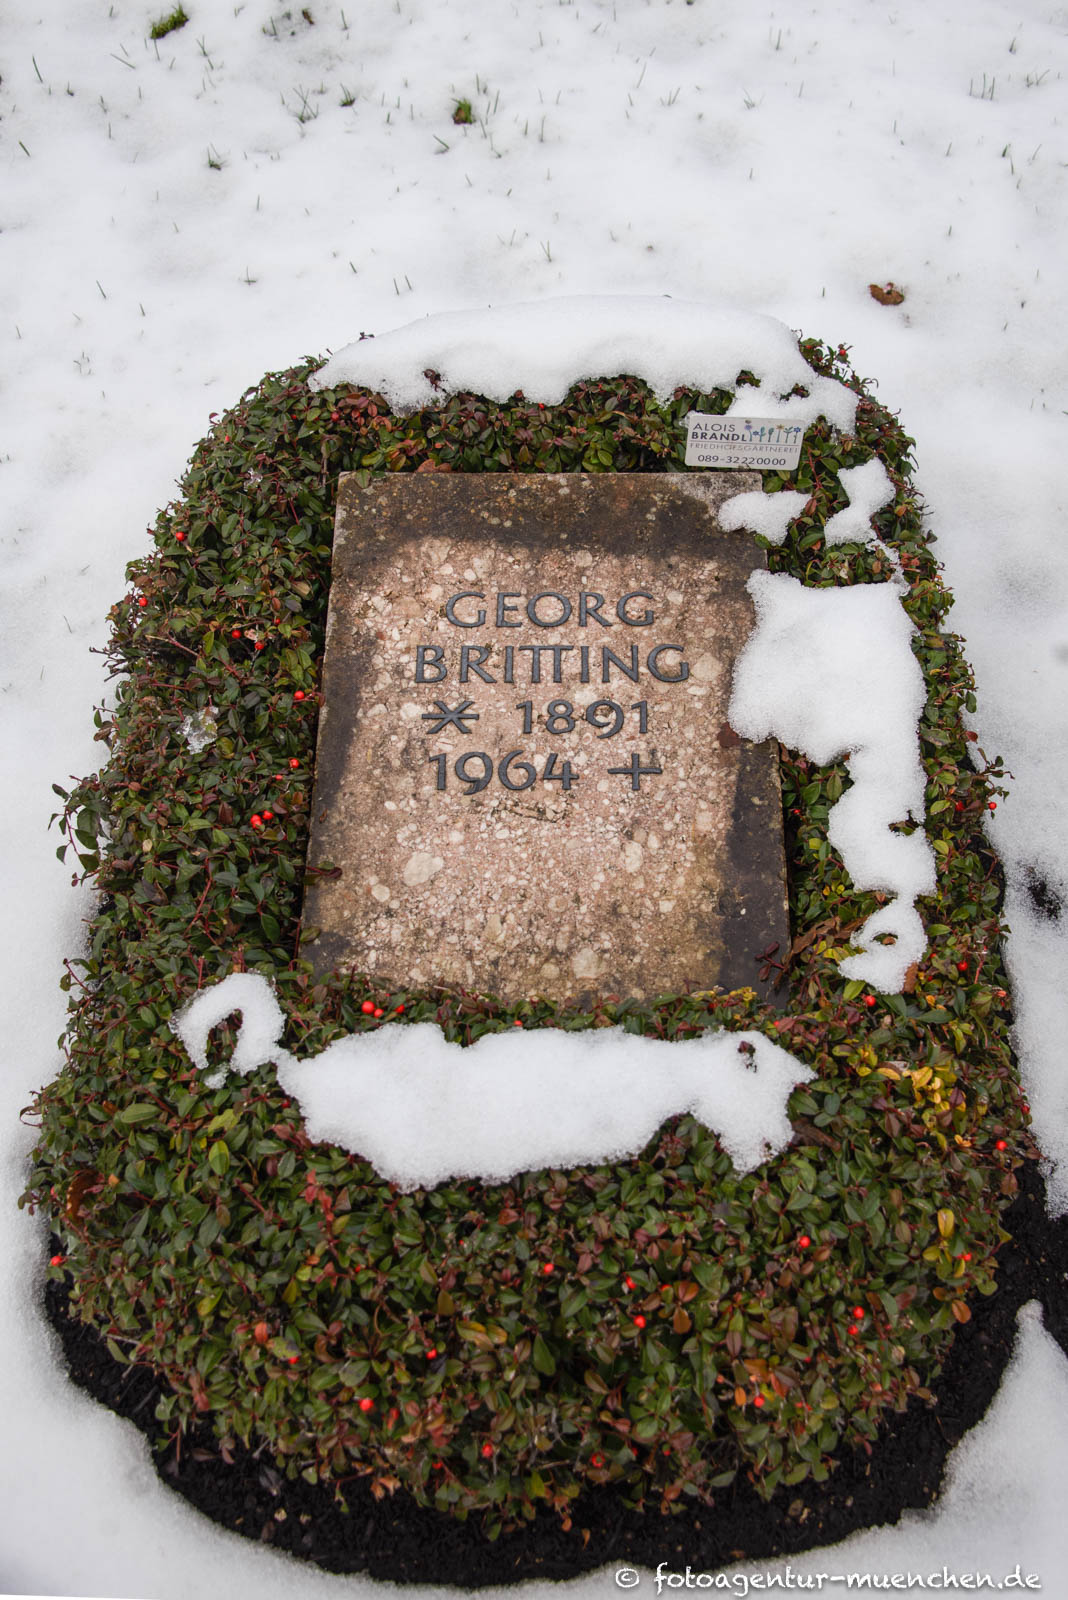 Georg Britting